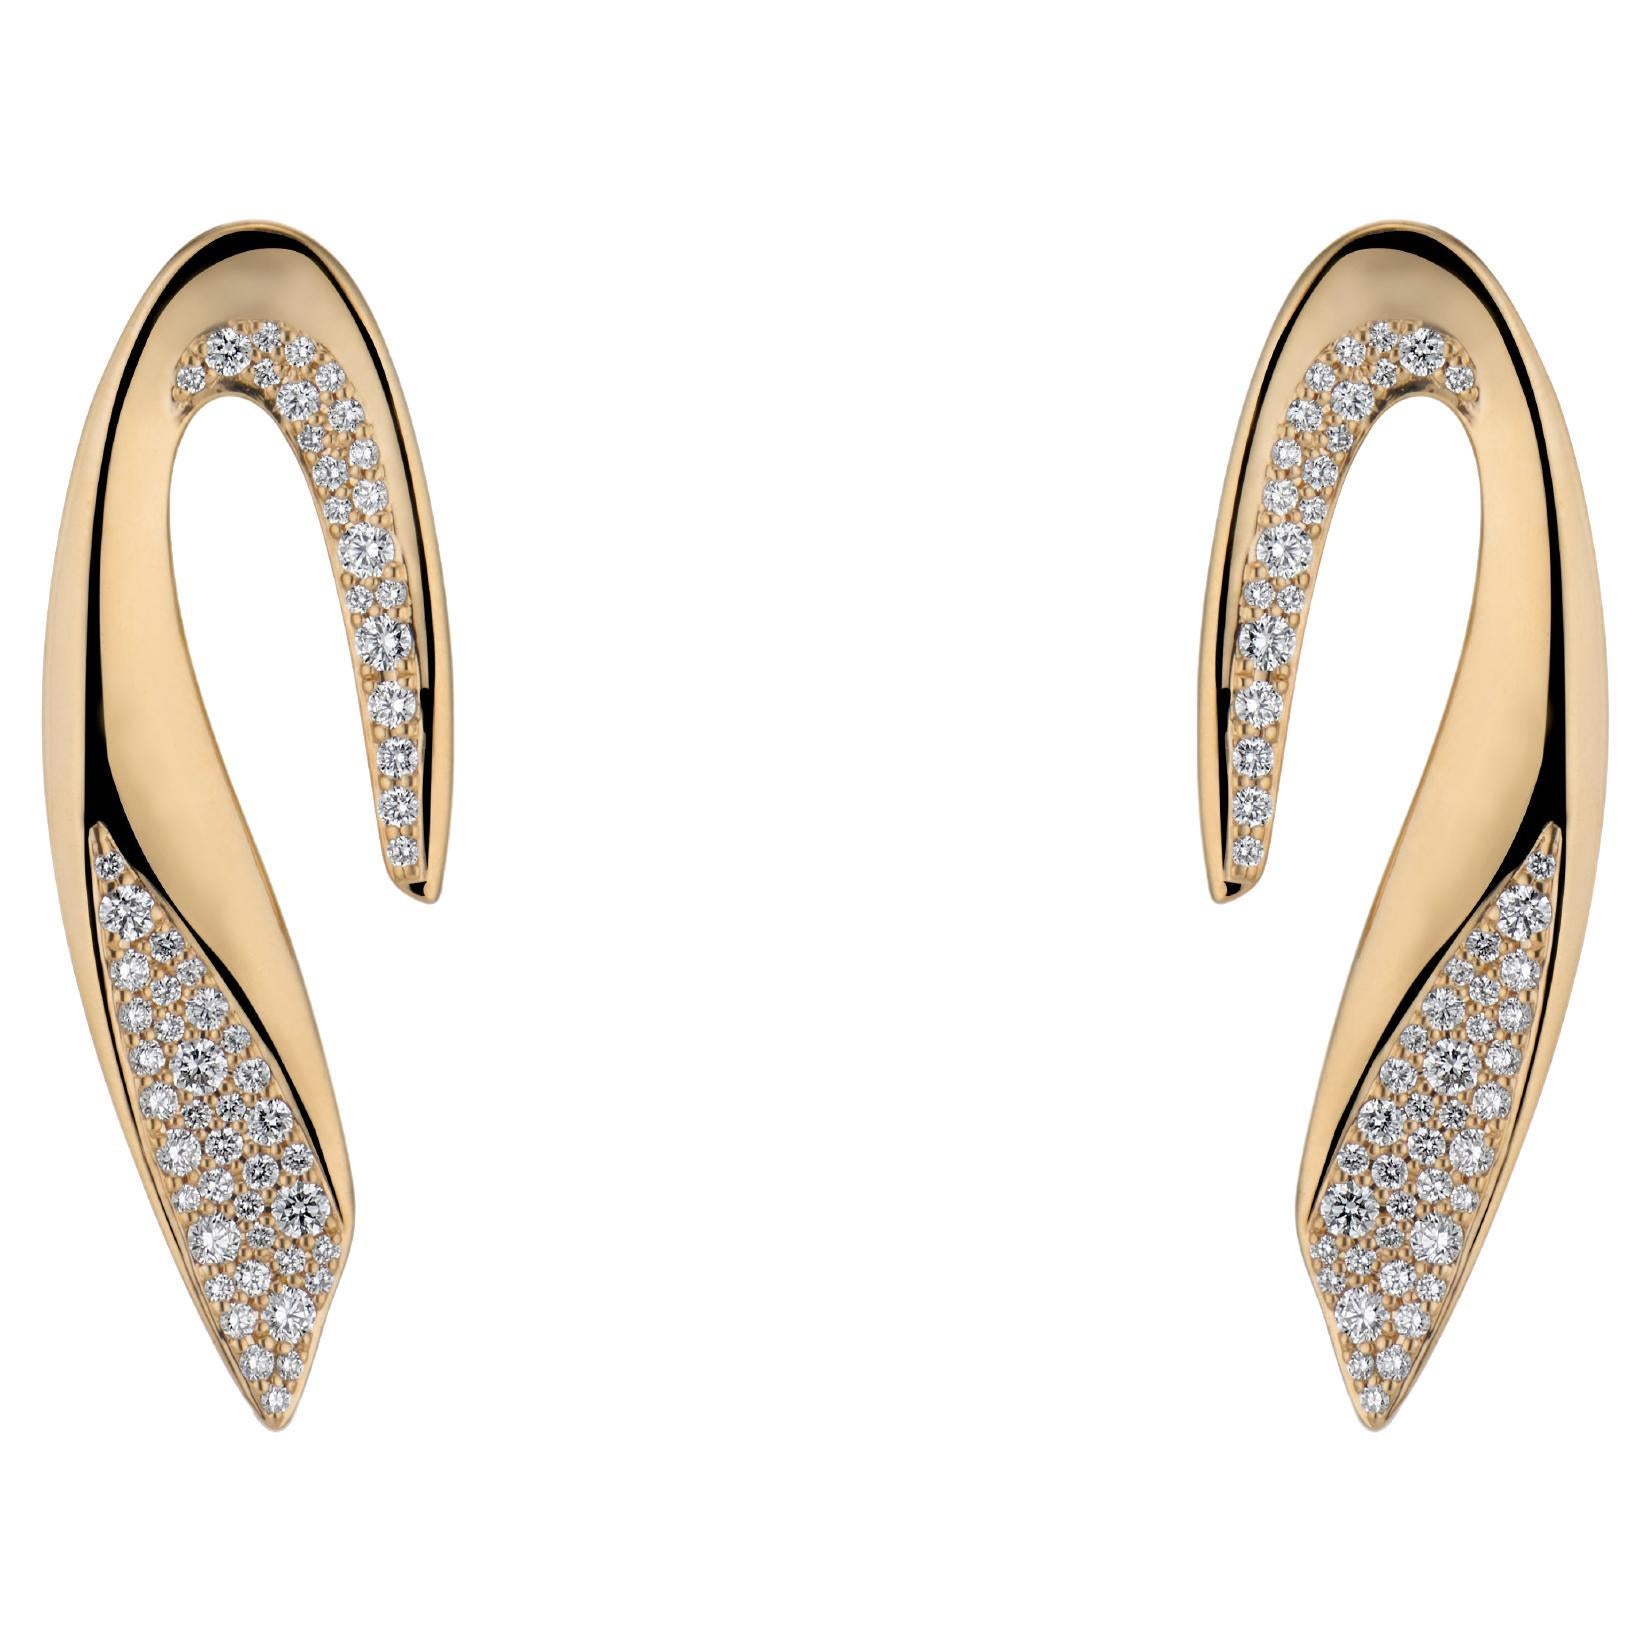 JV Insardi 18kt Gold and White Diamond Sculptural Earrings